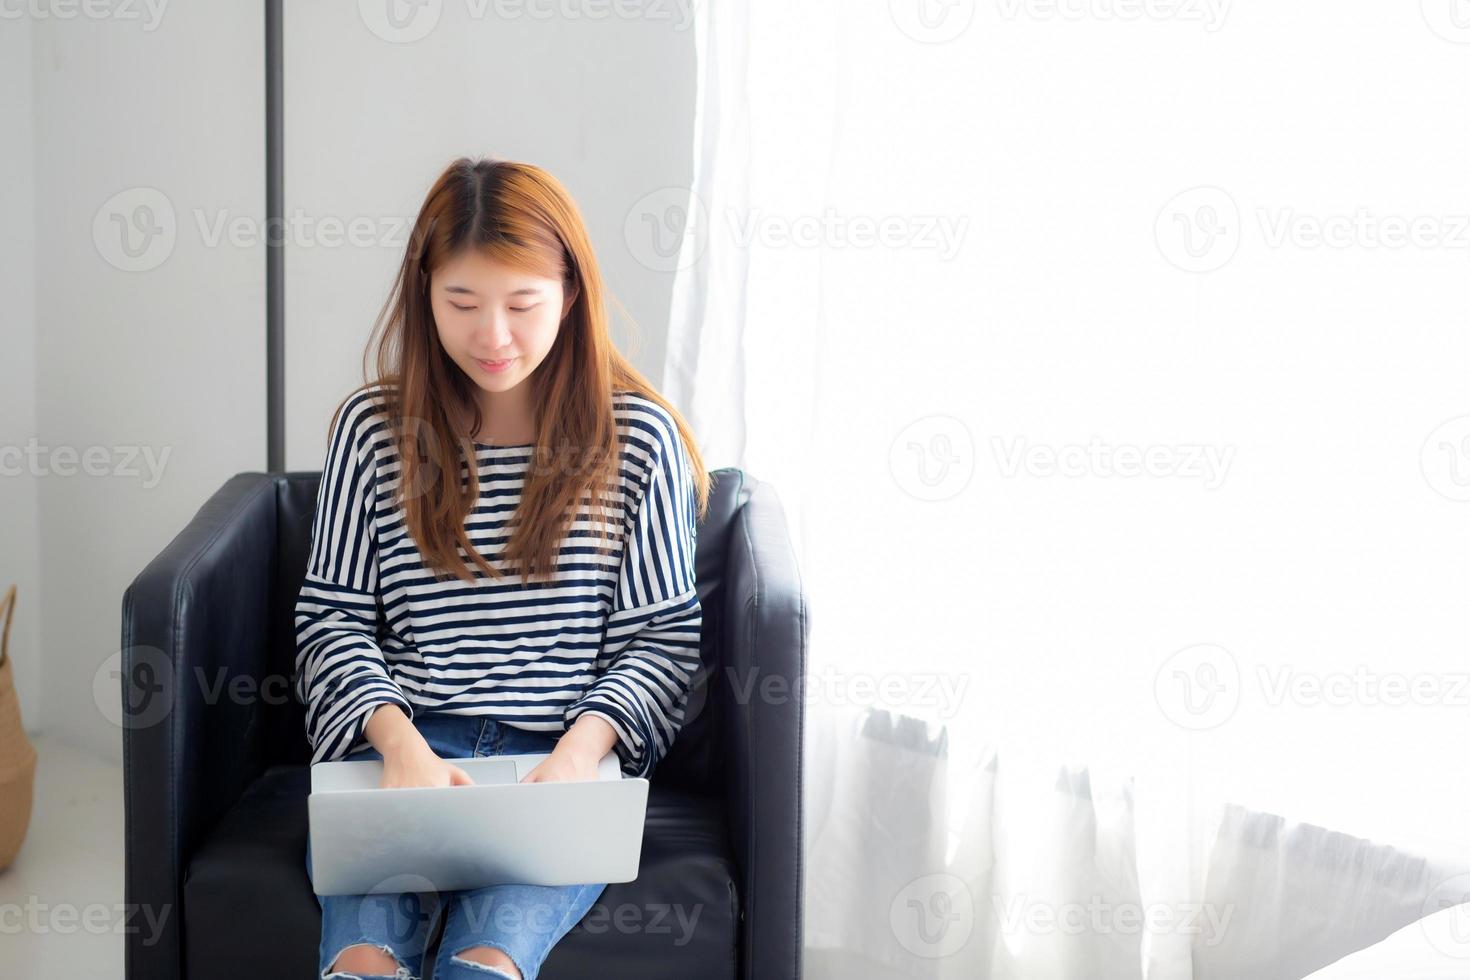 hermoso retrato de una joven asiática que usa una computadora portátil para el ocio en una silla en la sala de estar, una chica que trabaja en línea con un portátil independiente, concepto de negocio de comunicación. foto